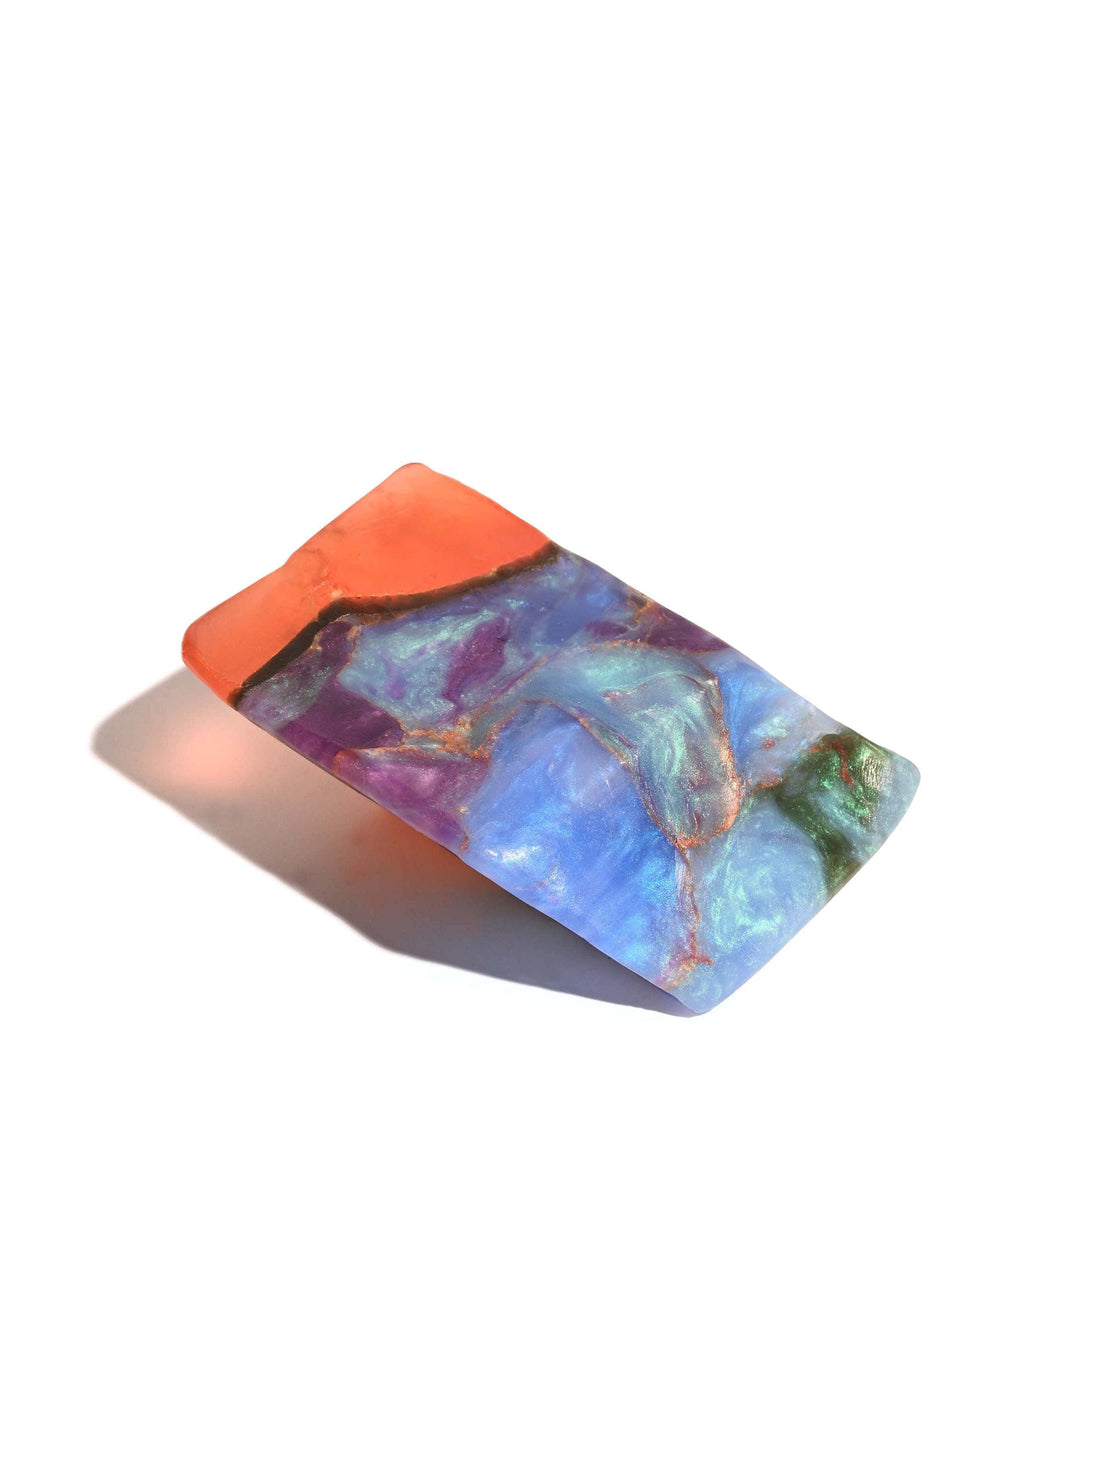 Fire Opal Soap Rock